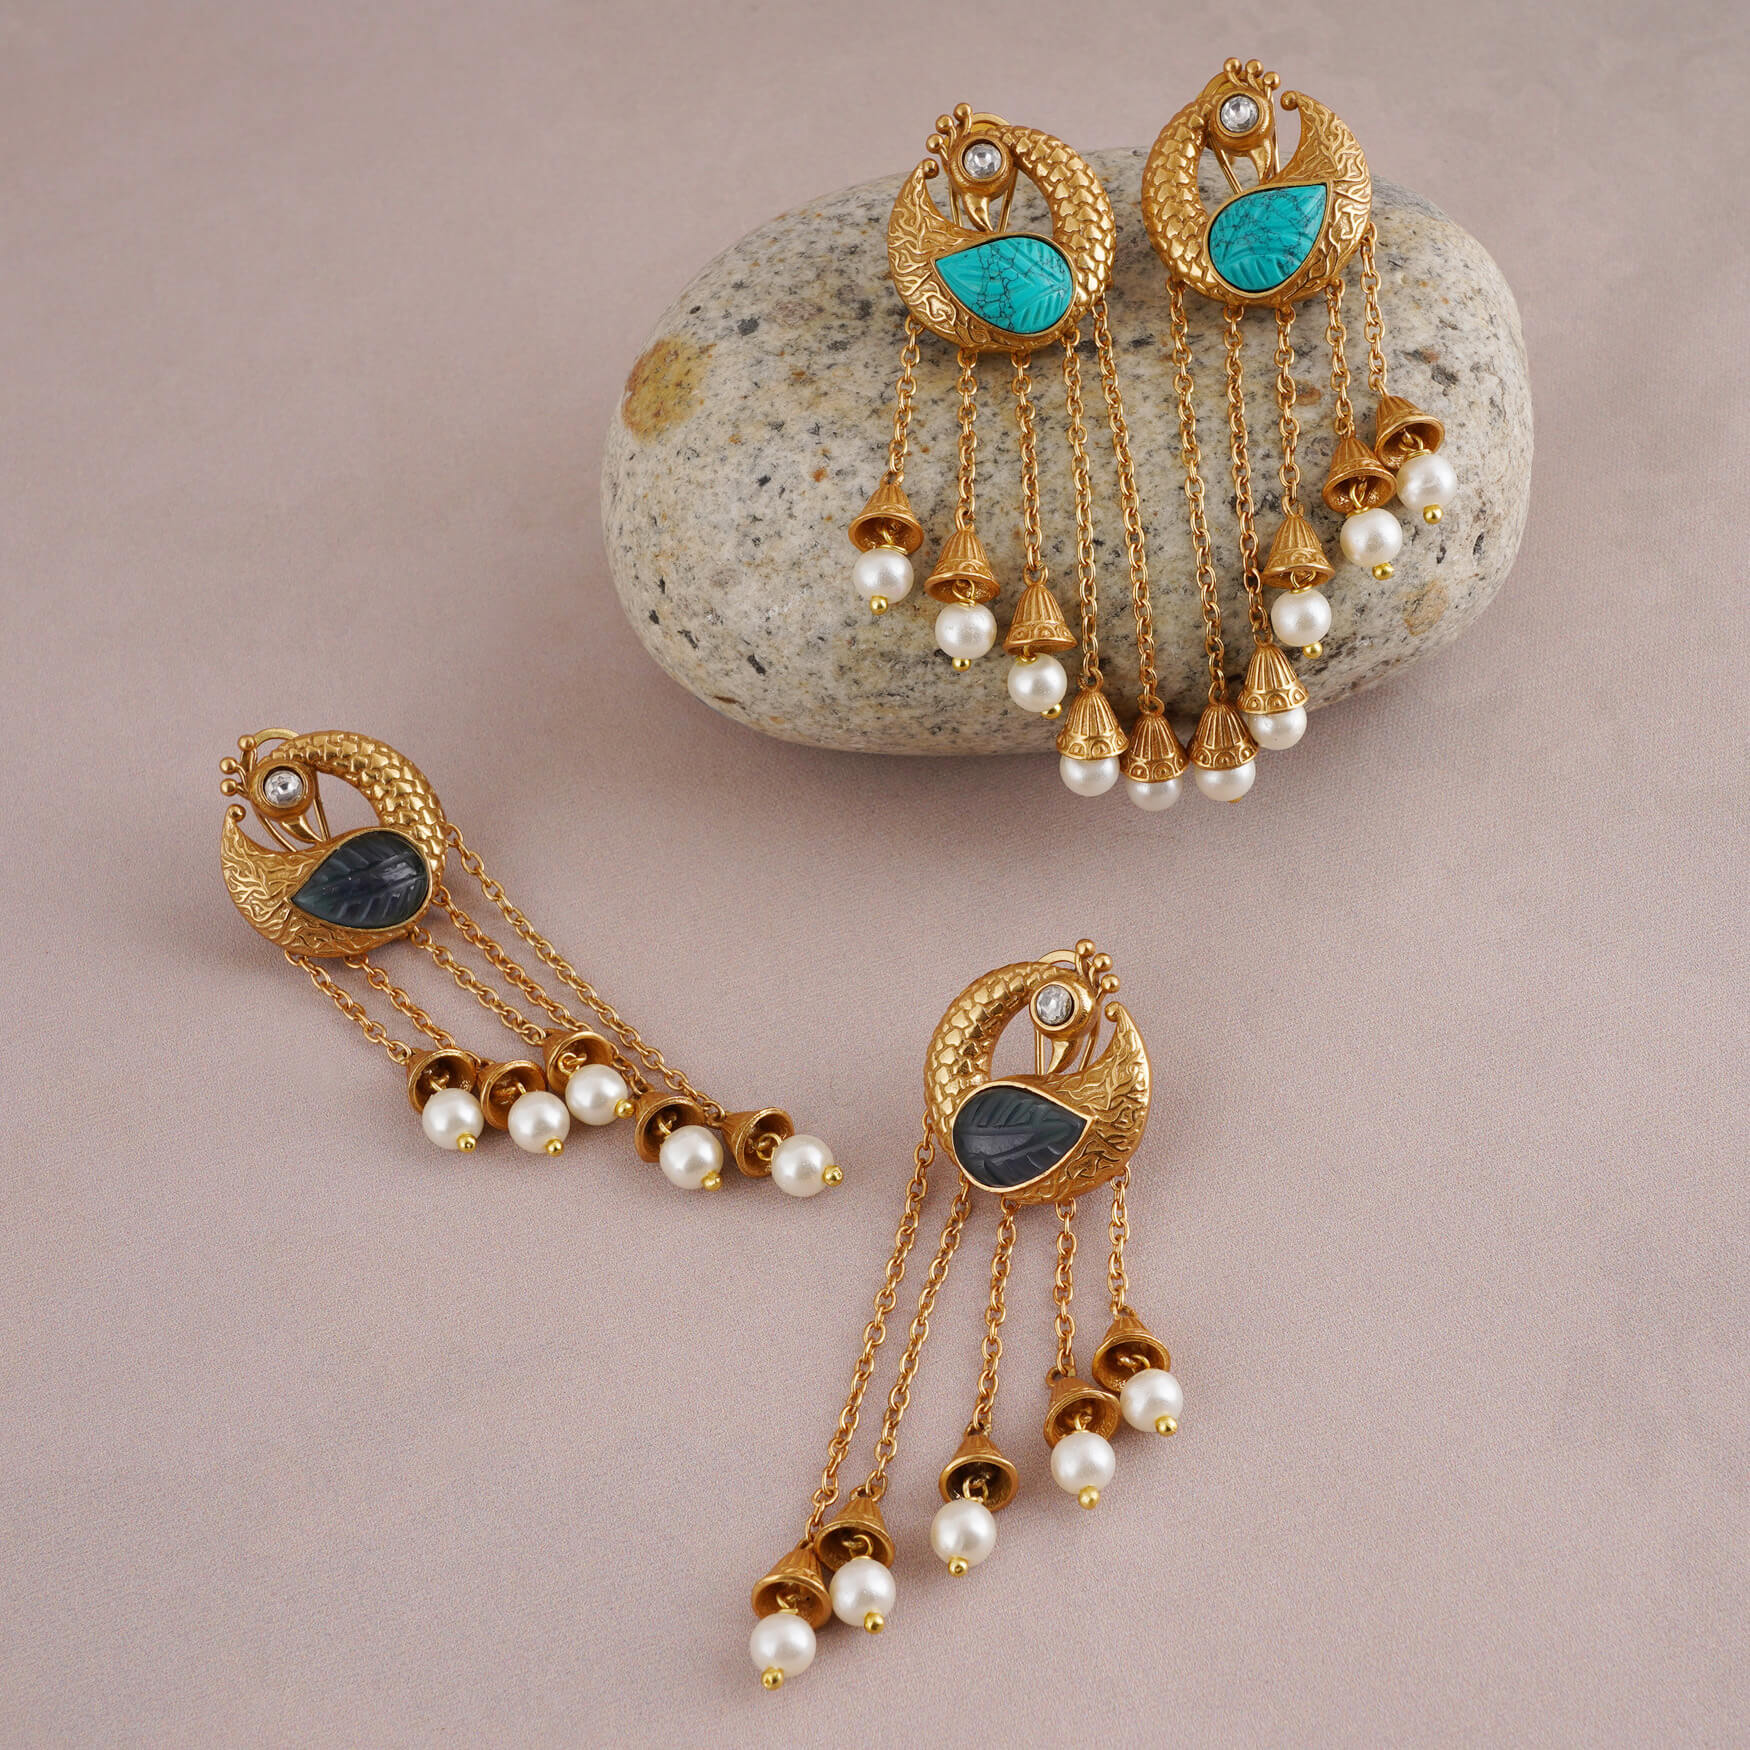 The Rudraksha Silver Earrings - buy latest hoop Earrings designs online at  best price — KO Jewellery